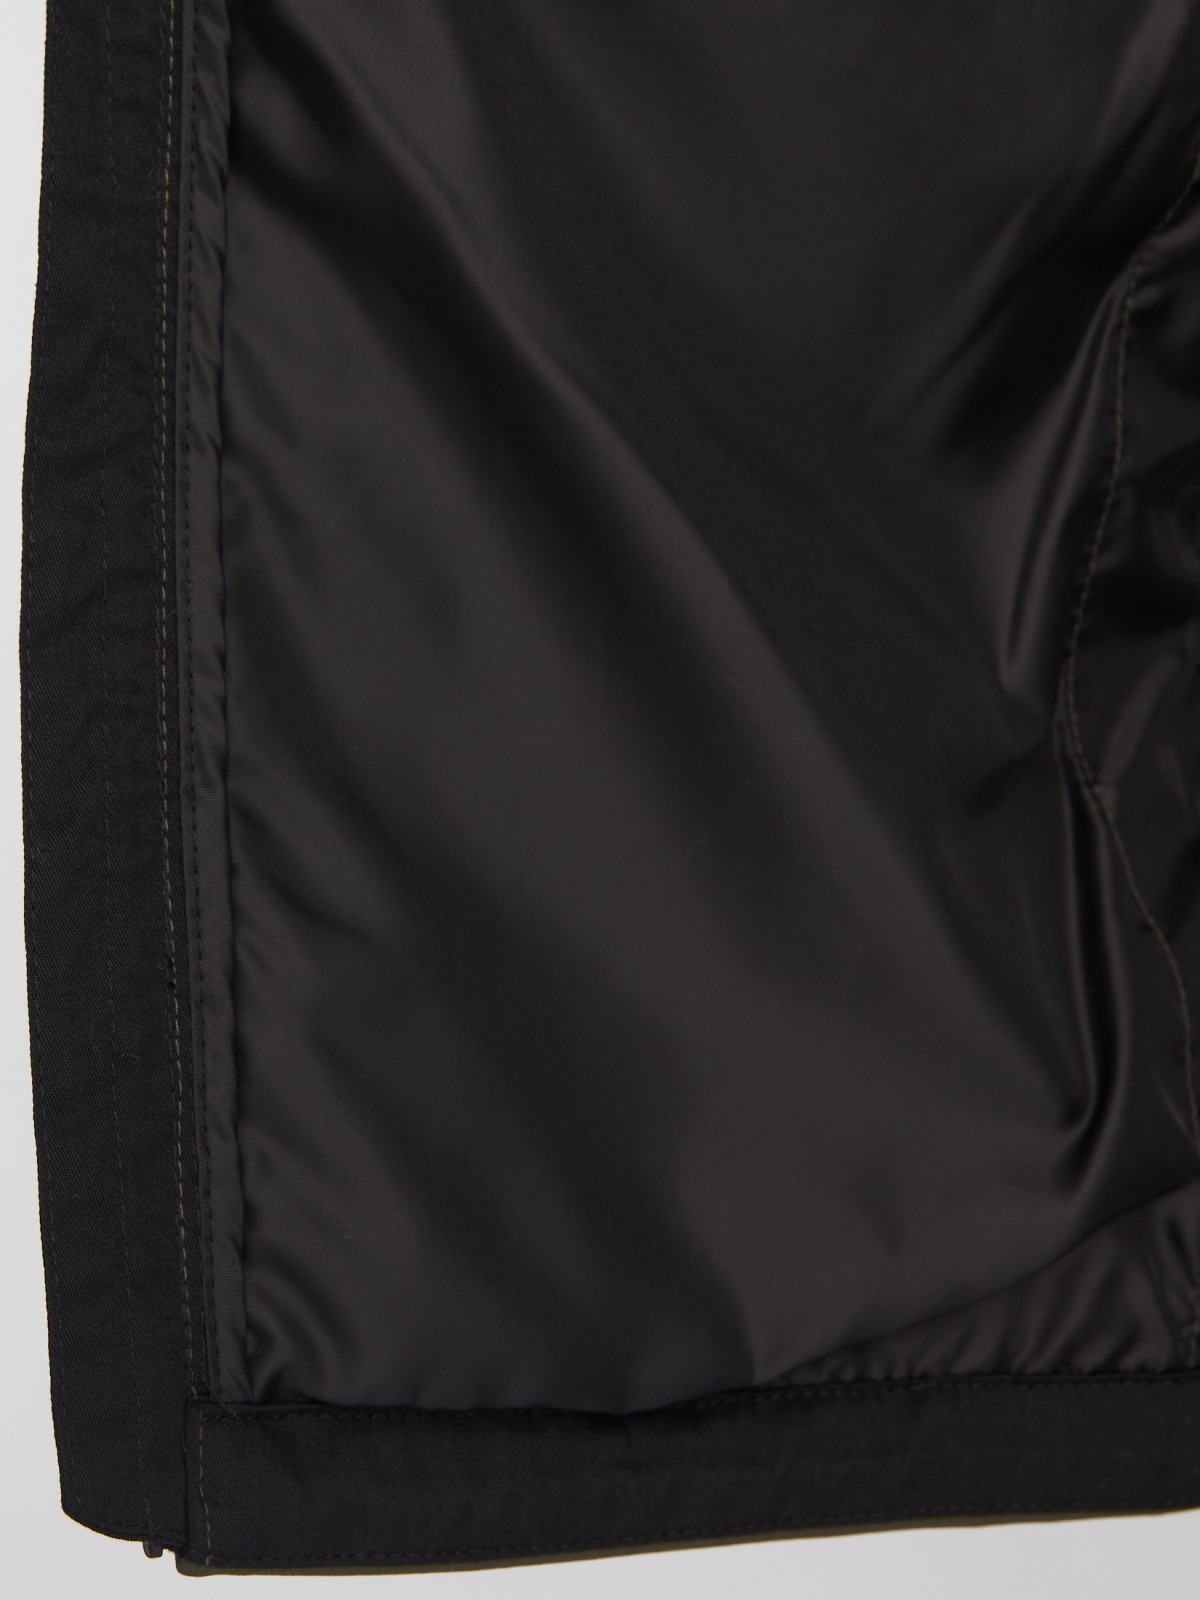 Лёгкая куртка-ветровка без утеплителя с капюшоном zolla 013325602014, цвет хаки, размер XXL - фото 5